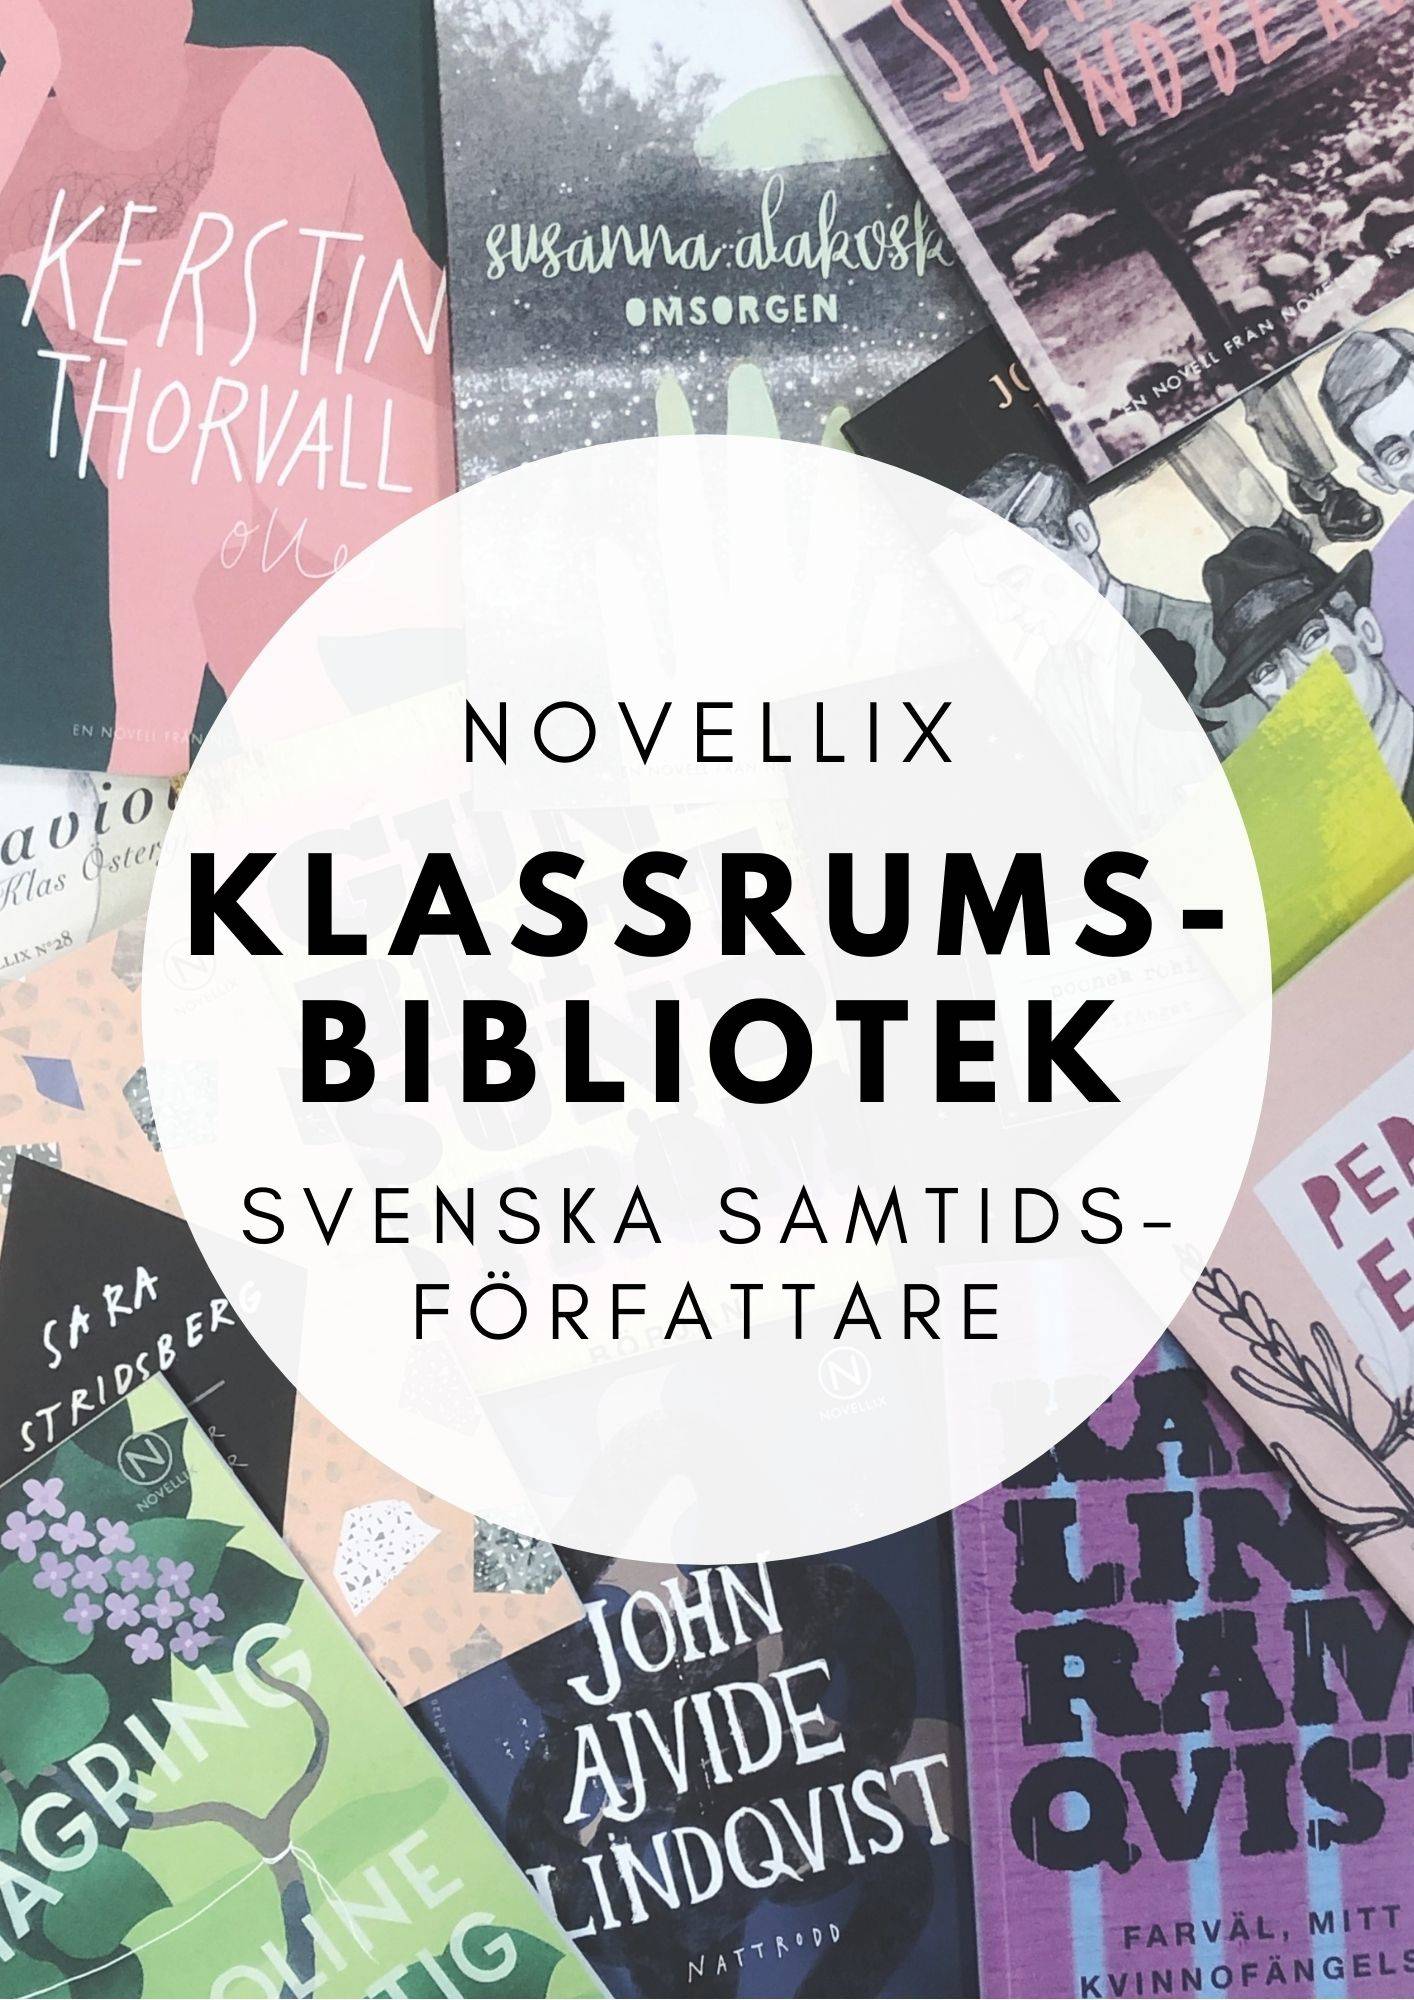 Novellix klassrumsbibliotek - Svenska samtidsförfattare